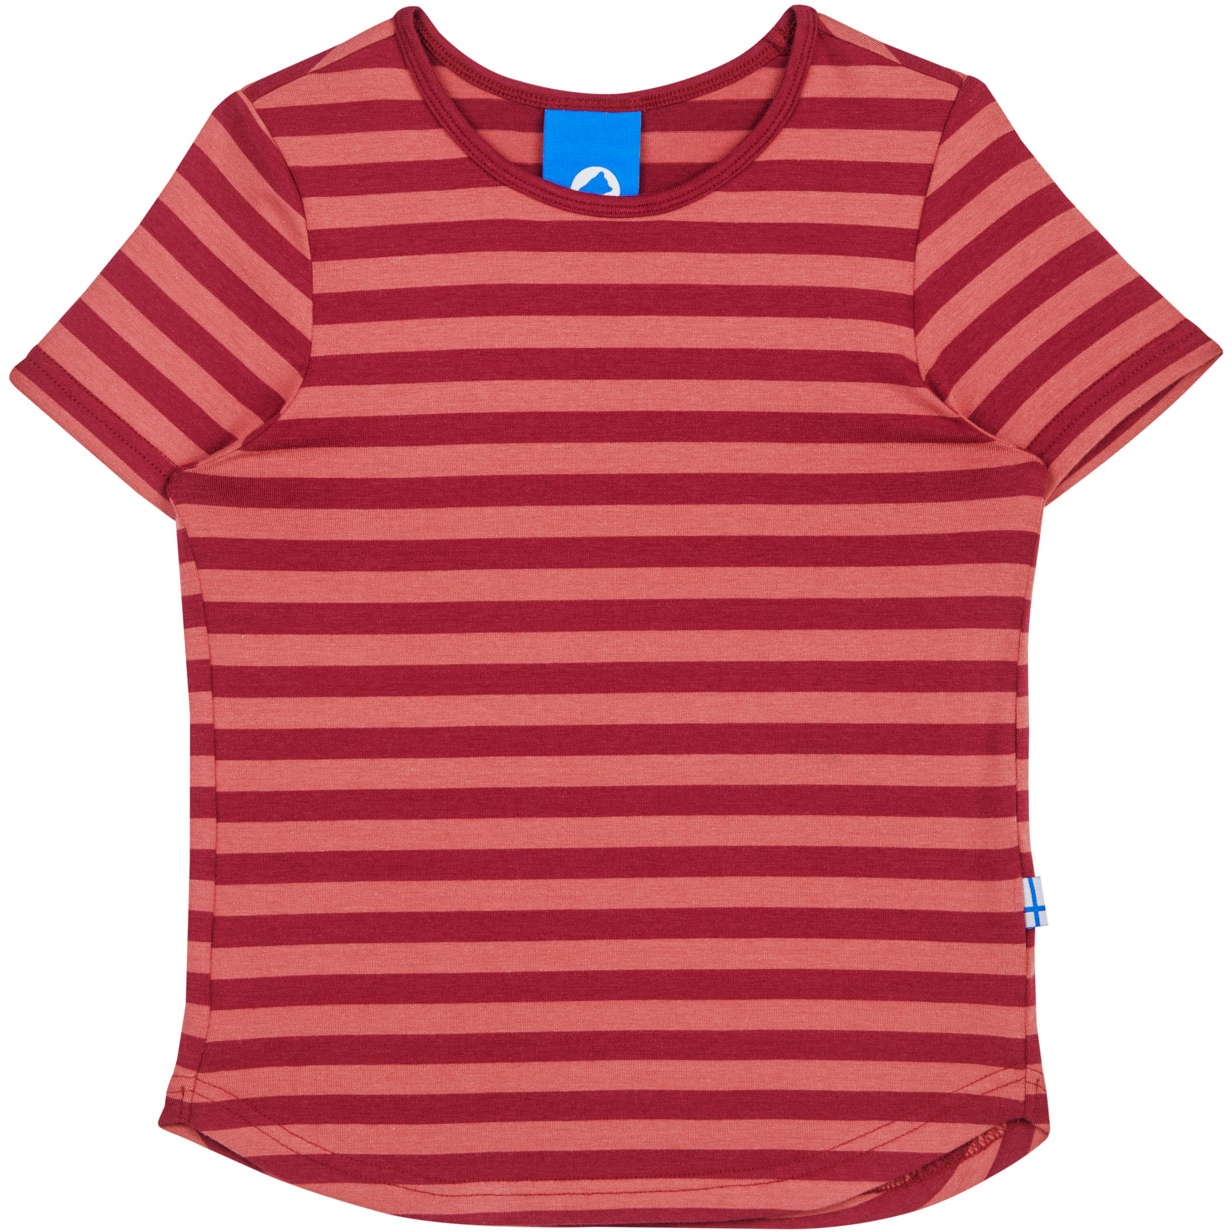 Produktbild von Finkid MAALARI Jersey T-Shirt Kinder - beet red/rose